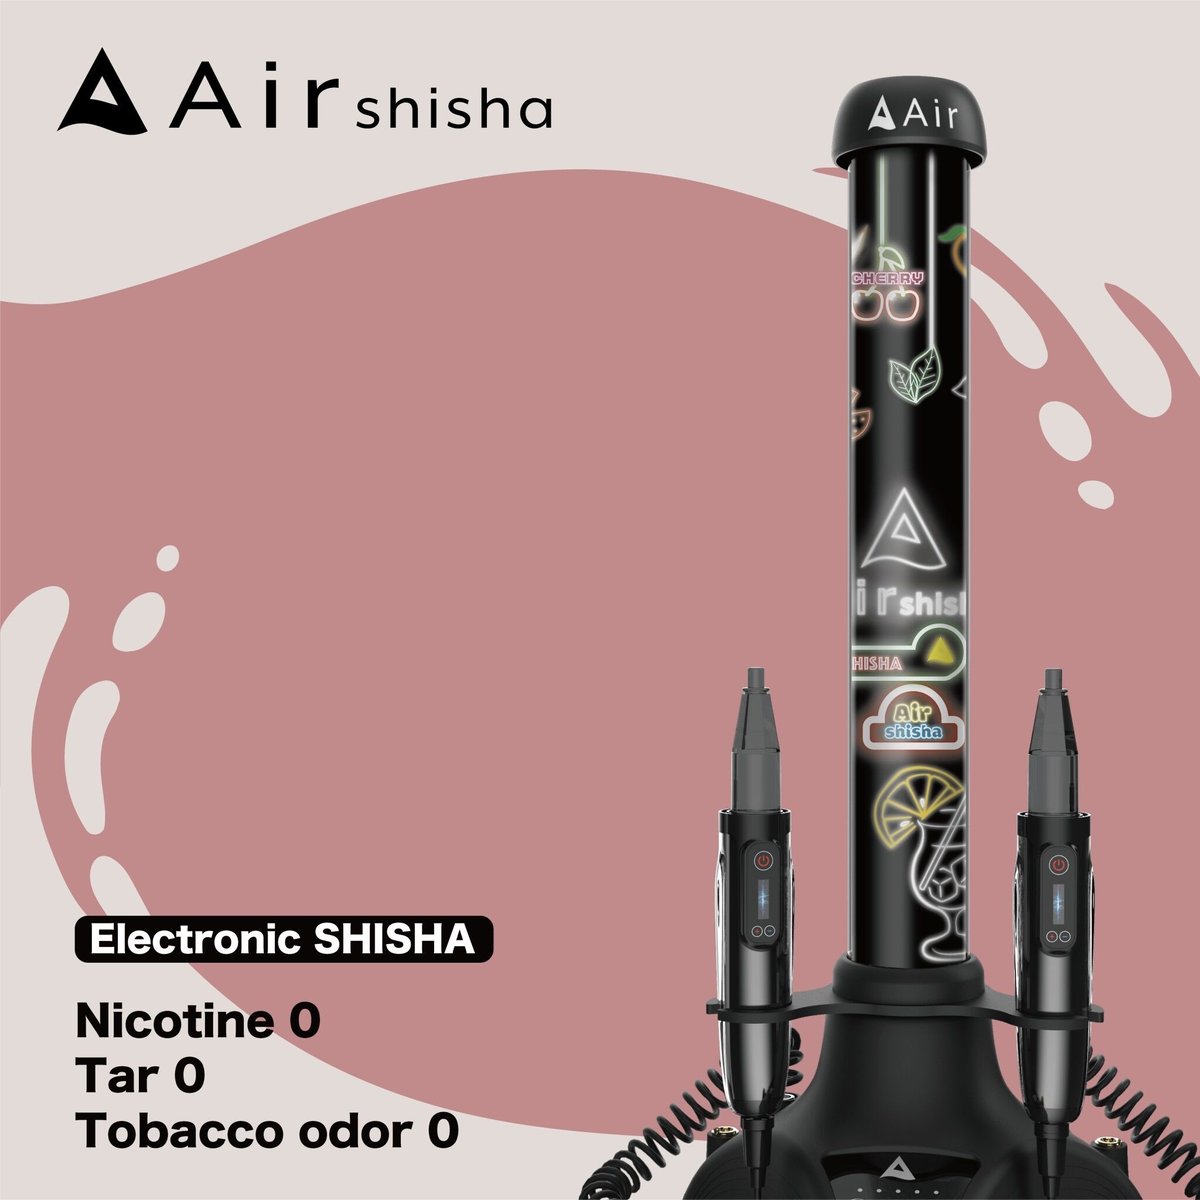 Air shisha【AS01-B2】 | Air mini